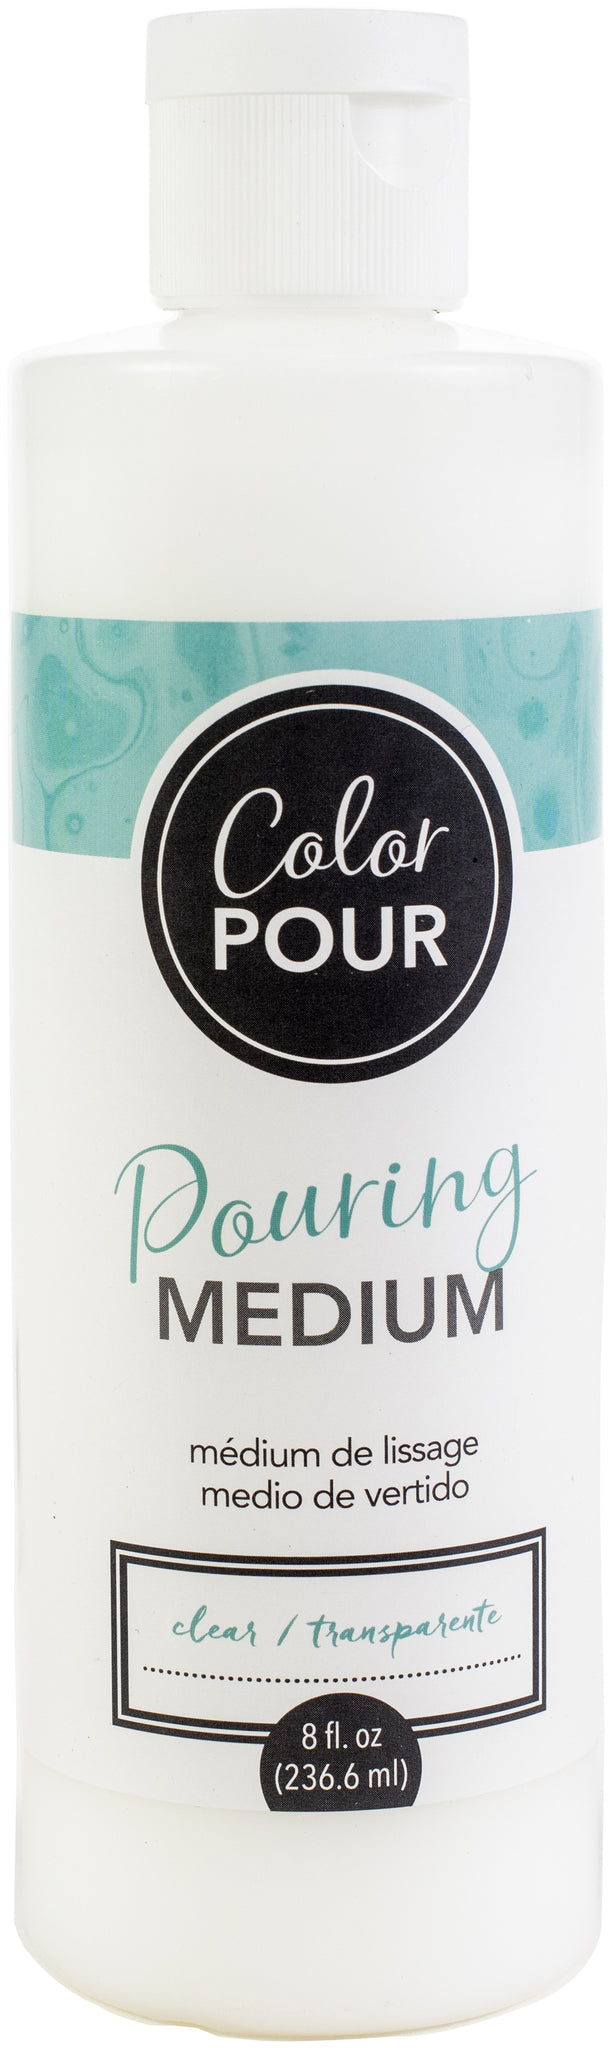 Paint Pour - Color Pour Pouring Medium